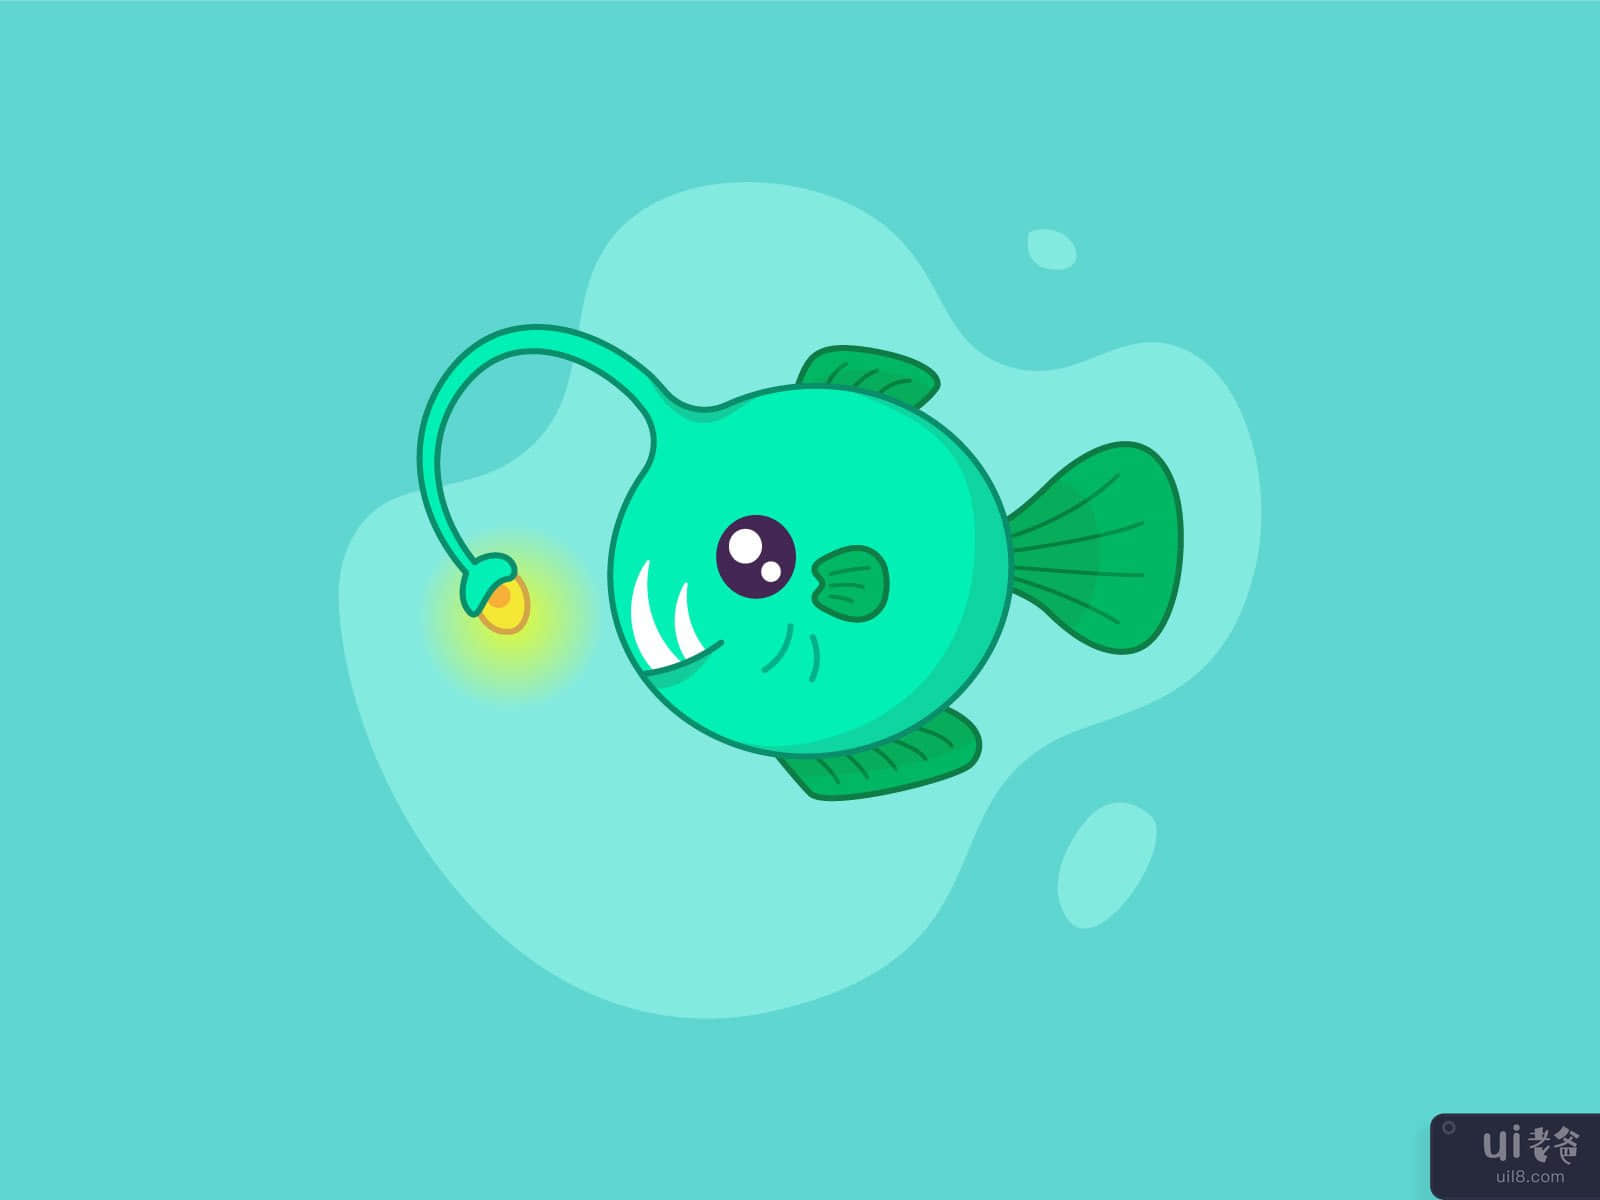 Angler-fish